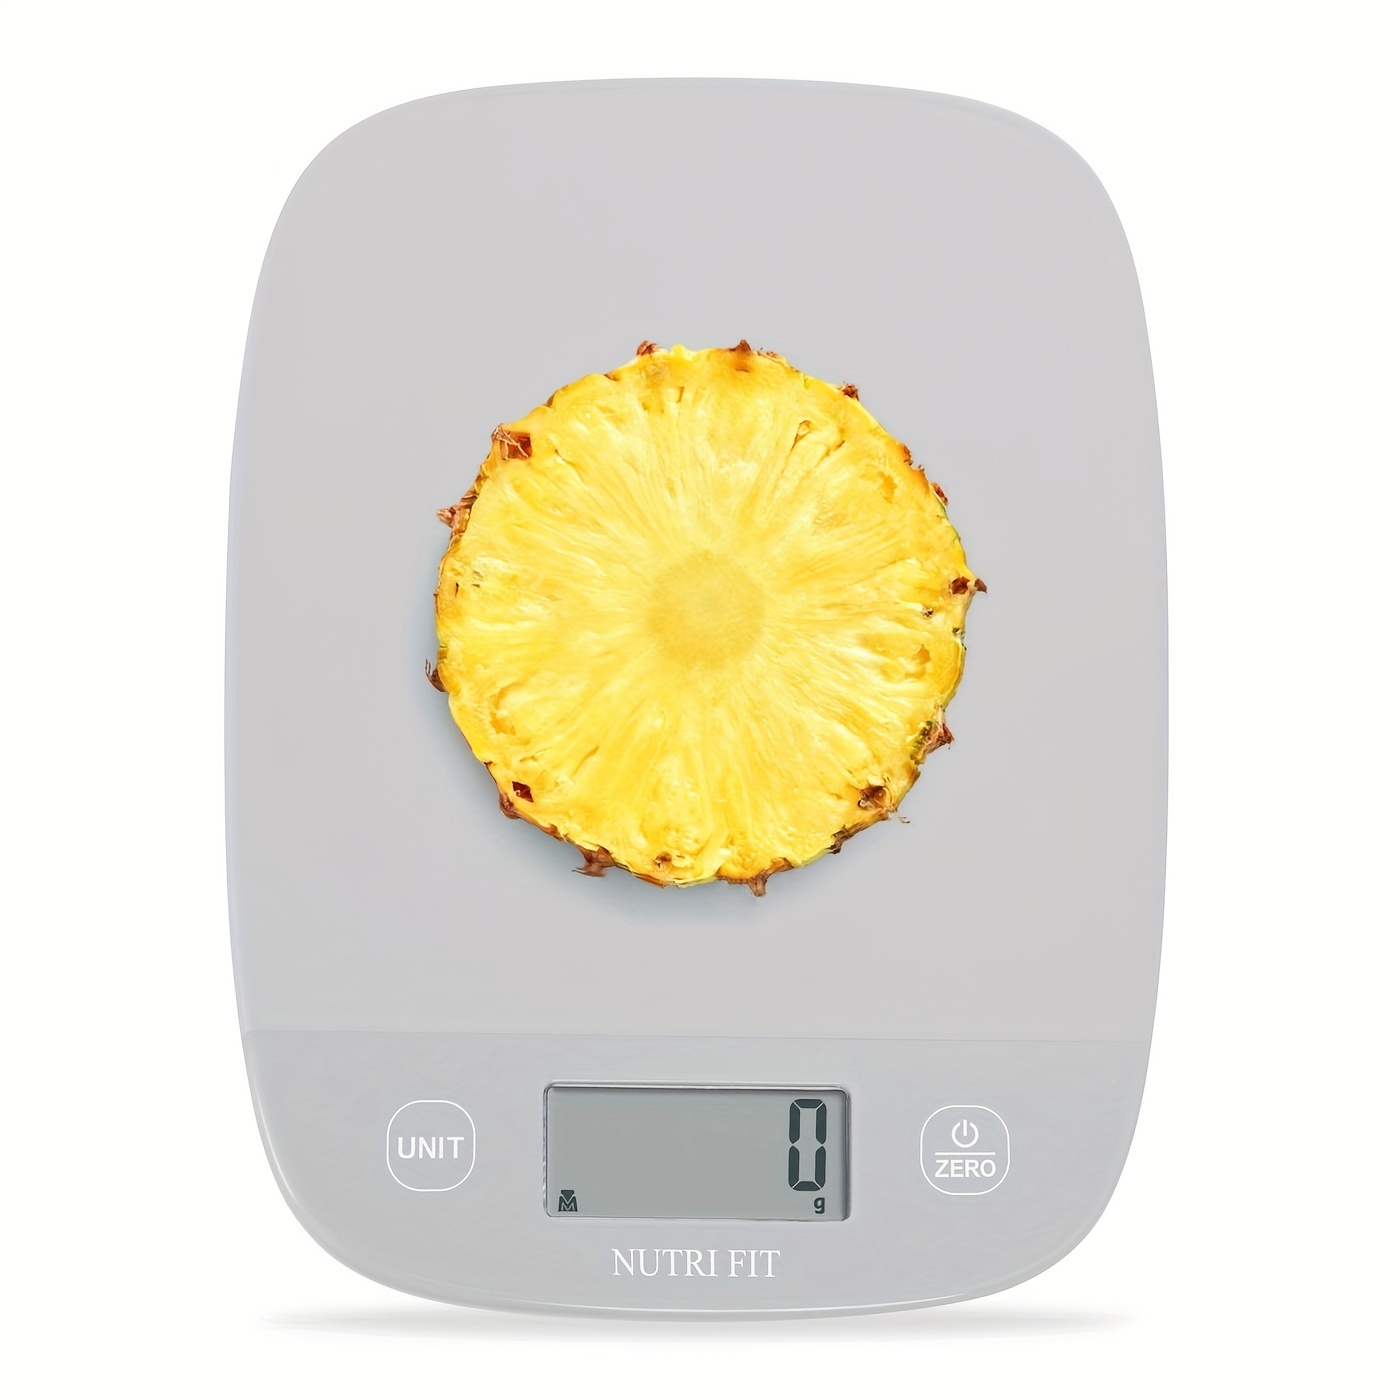 Báscula digital de cocina báscula de alimentos, báscula de cocina USB,  escala de alimentos de 0.04 oz/1 g, 11 lb/5 kg, función de pantalla LCD